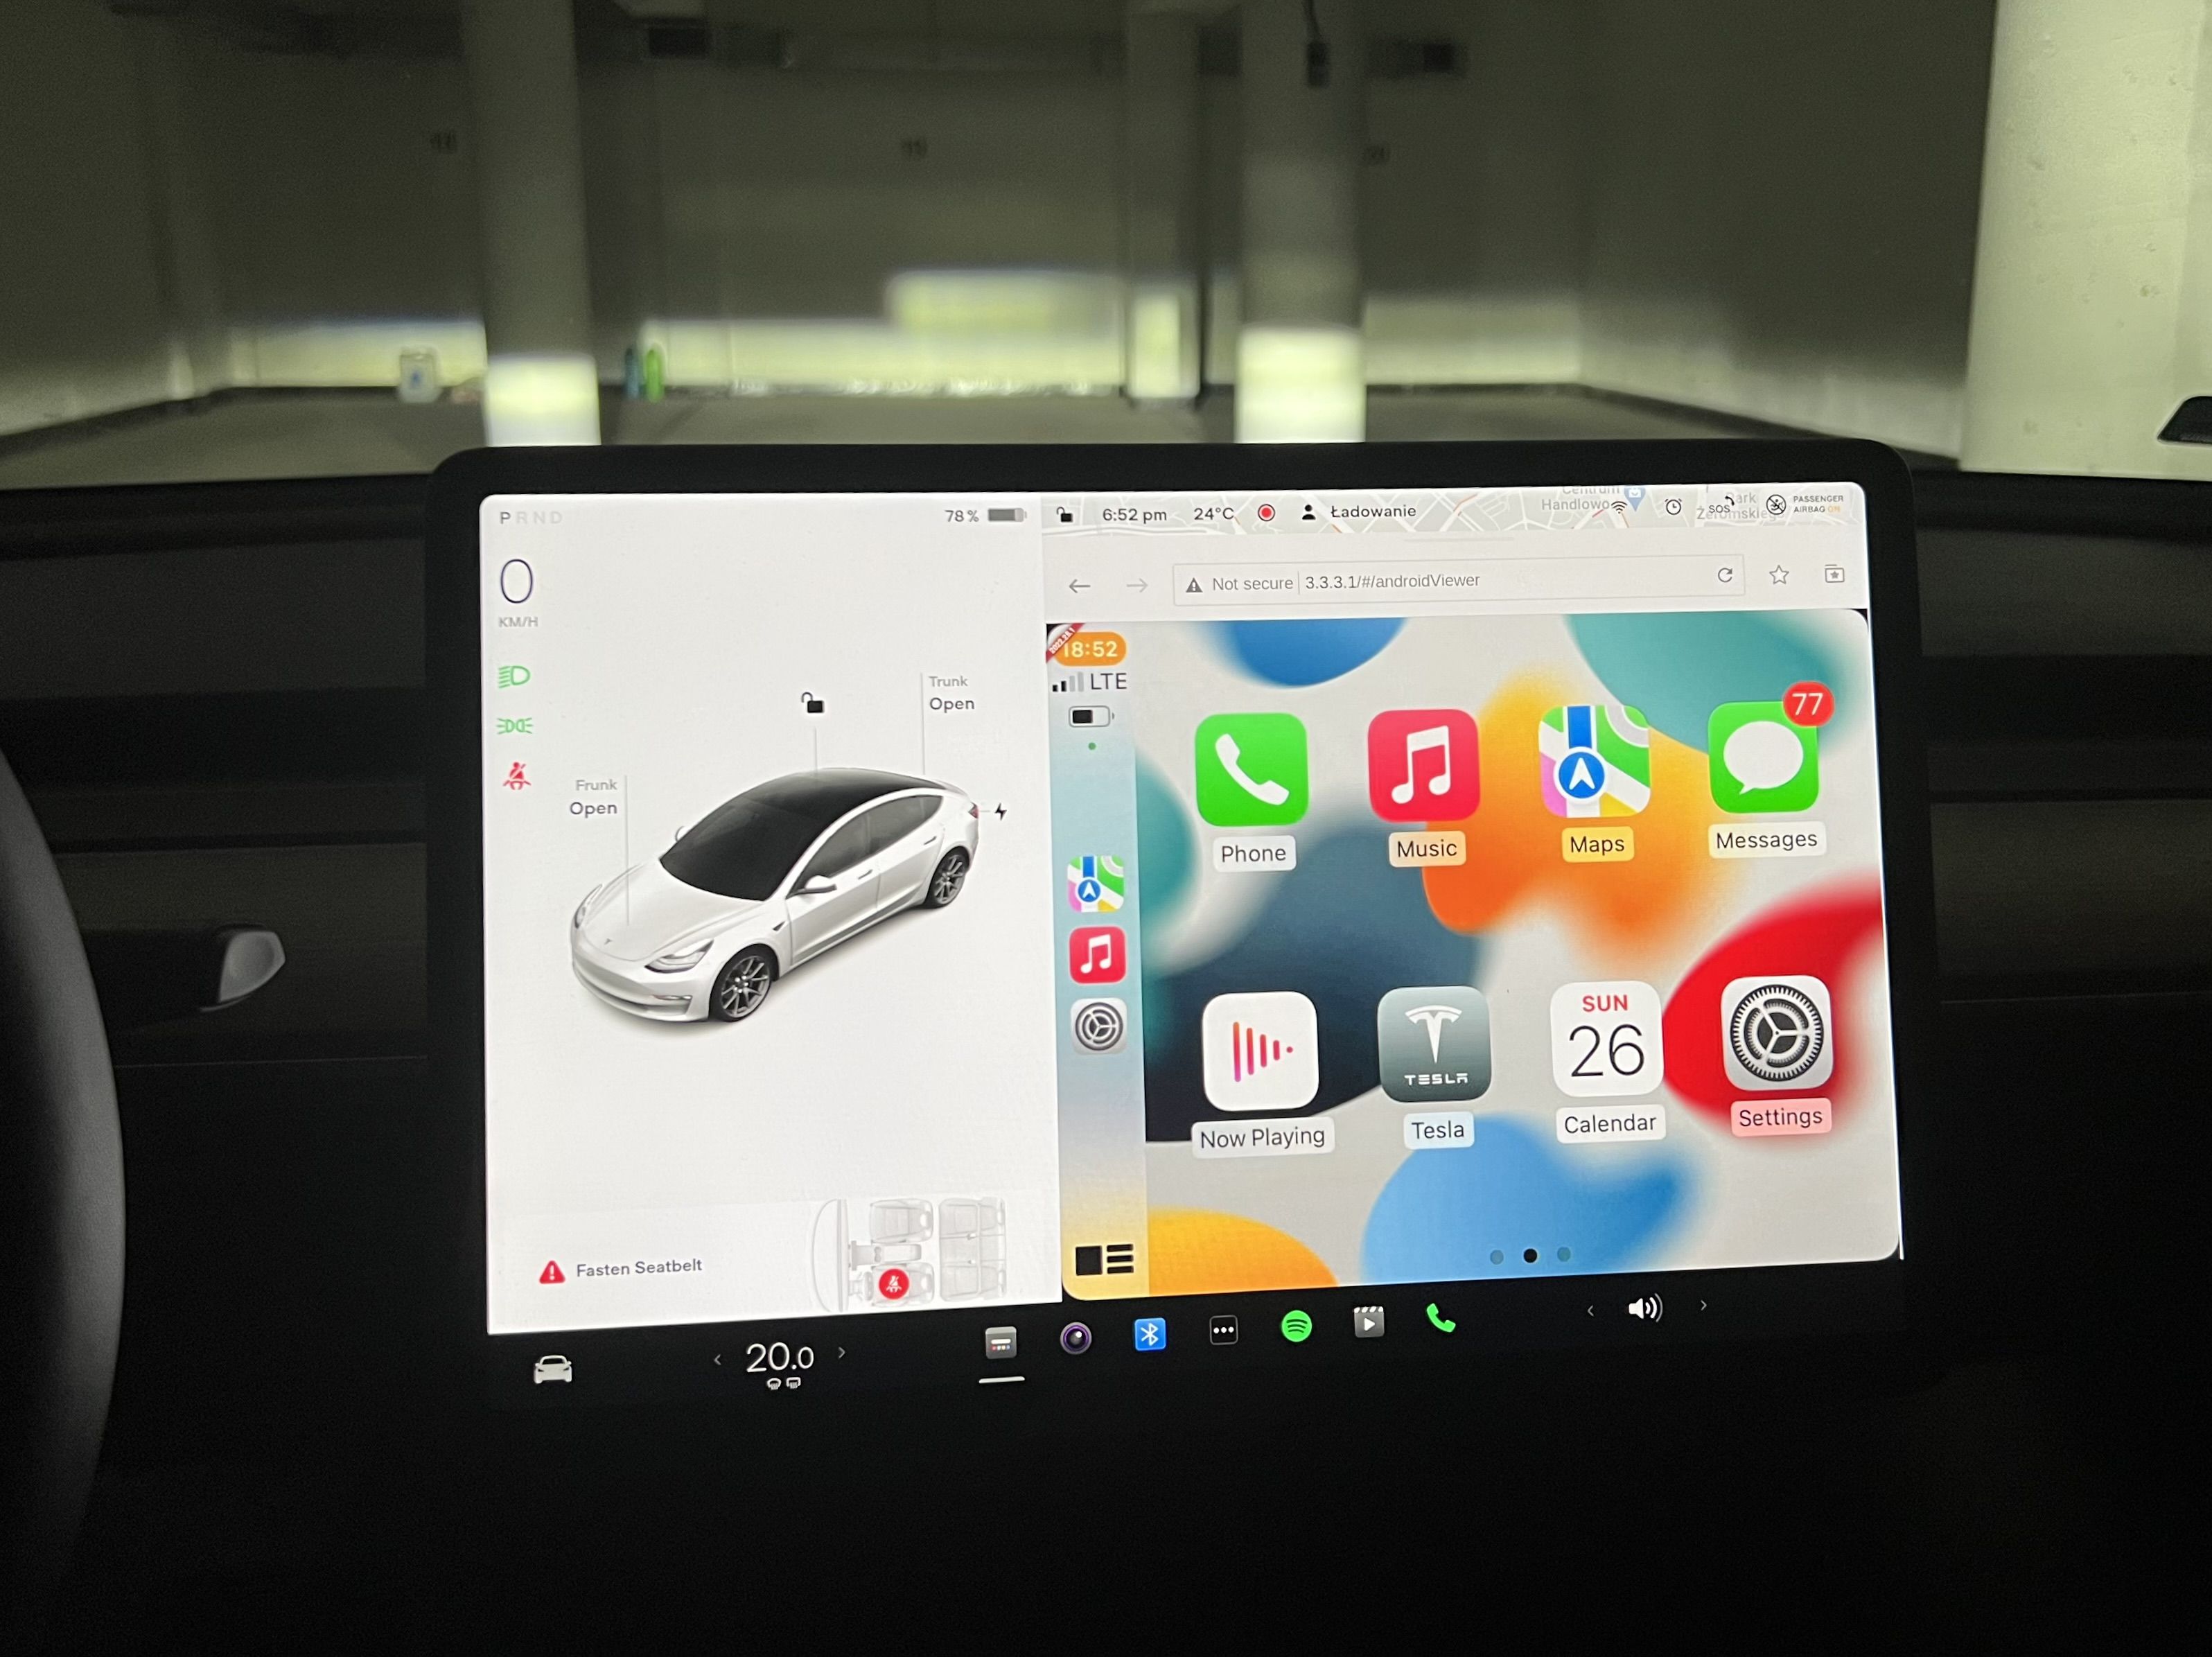 Tesla Apple CarPlay Hack Updated to Work With Any Tesla Model - MacRumors